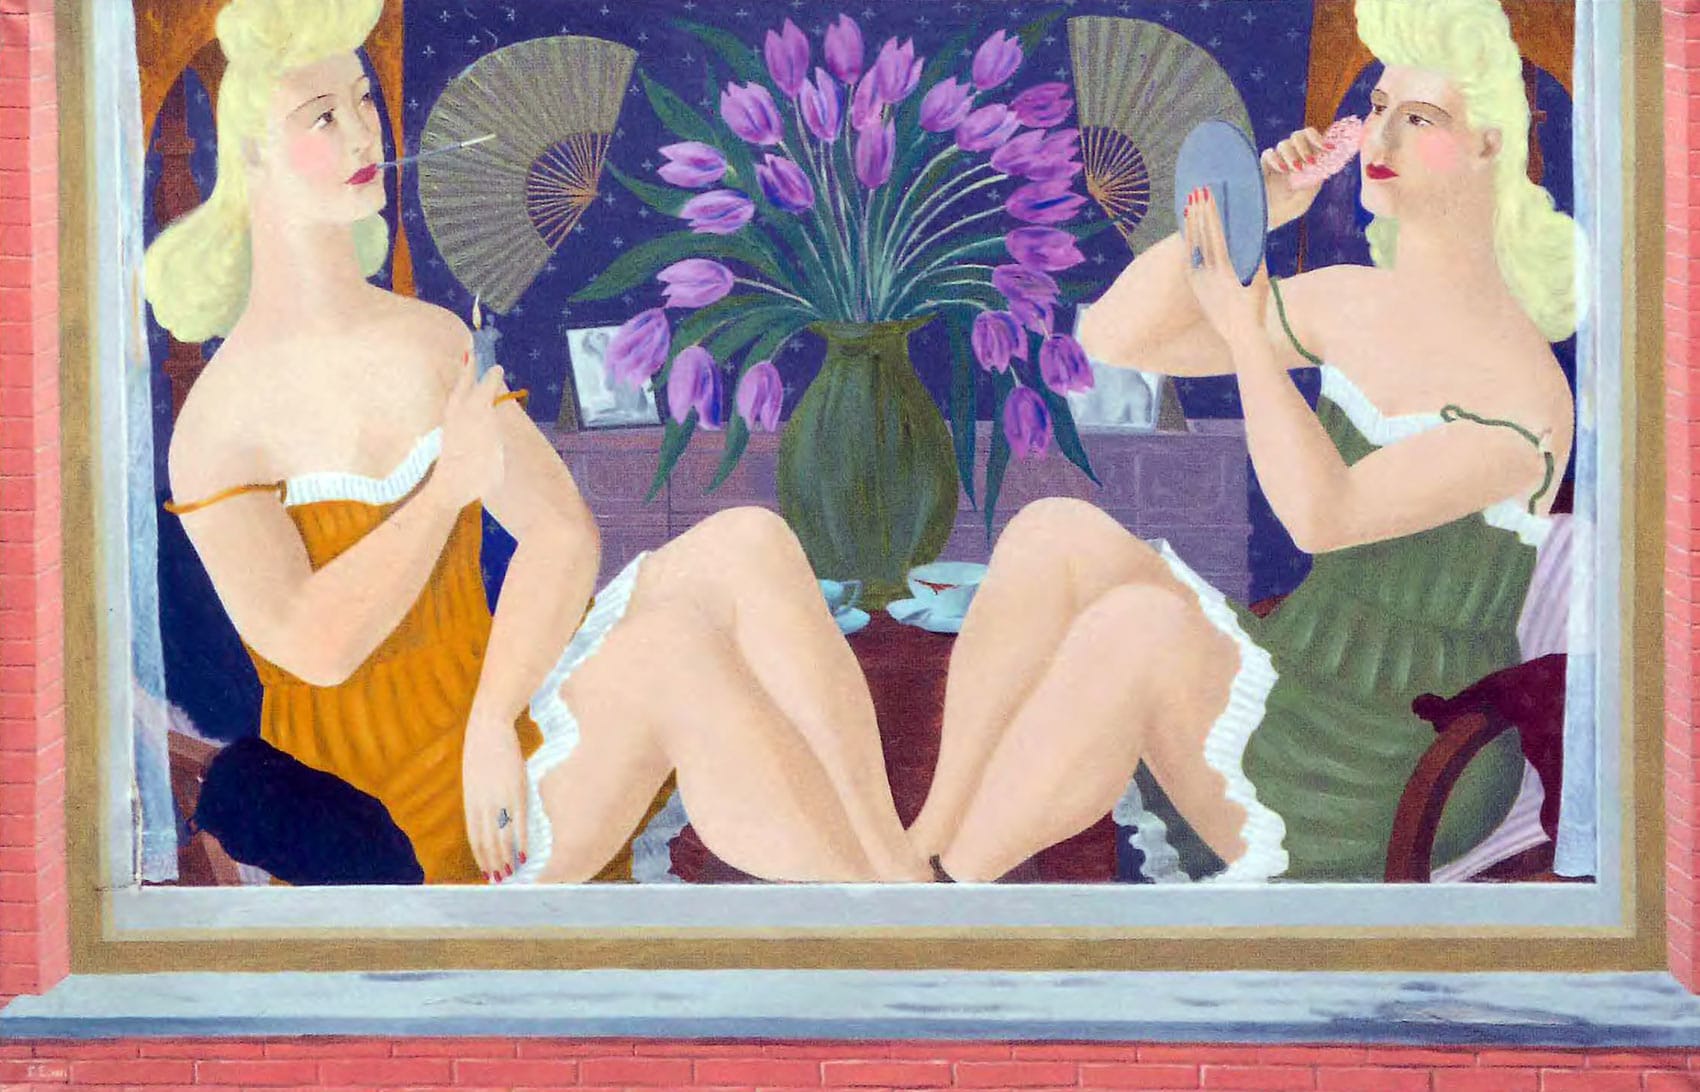 Prostituees, schilderij Ferdinand Erfmann